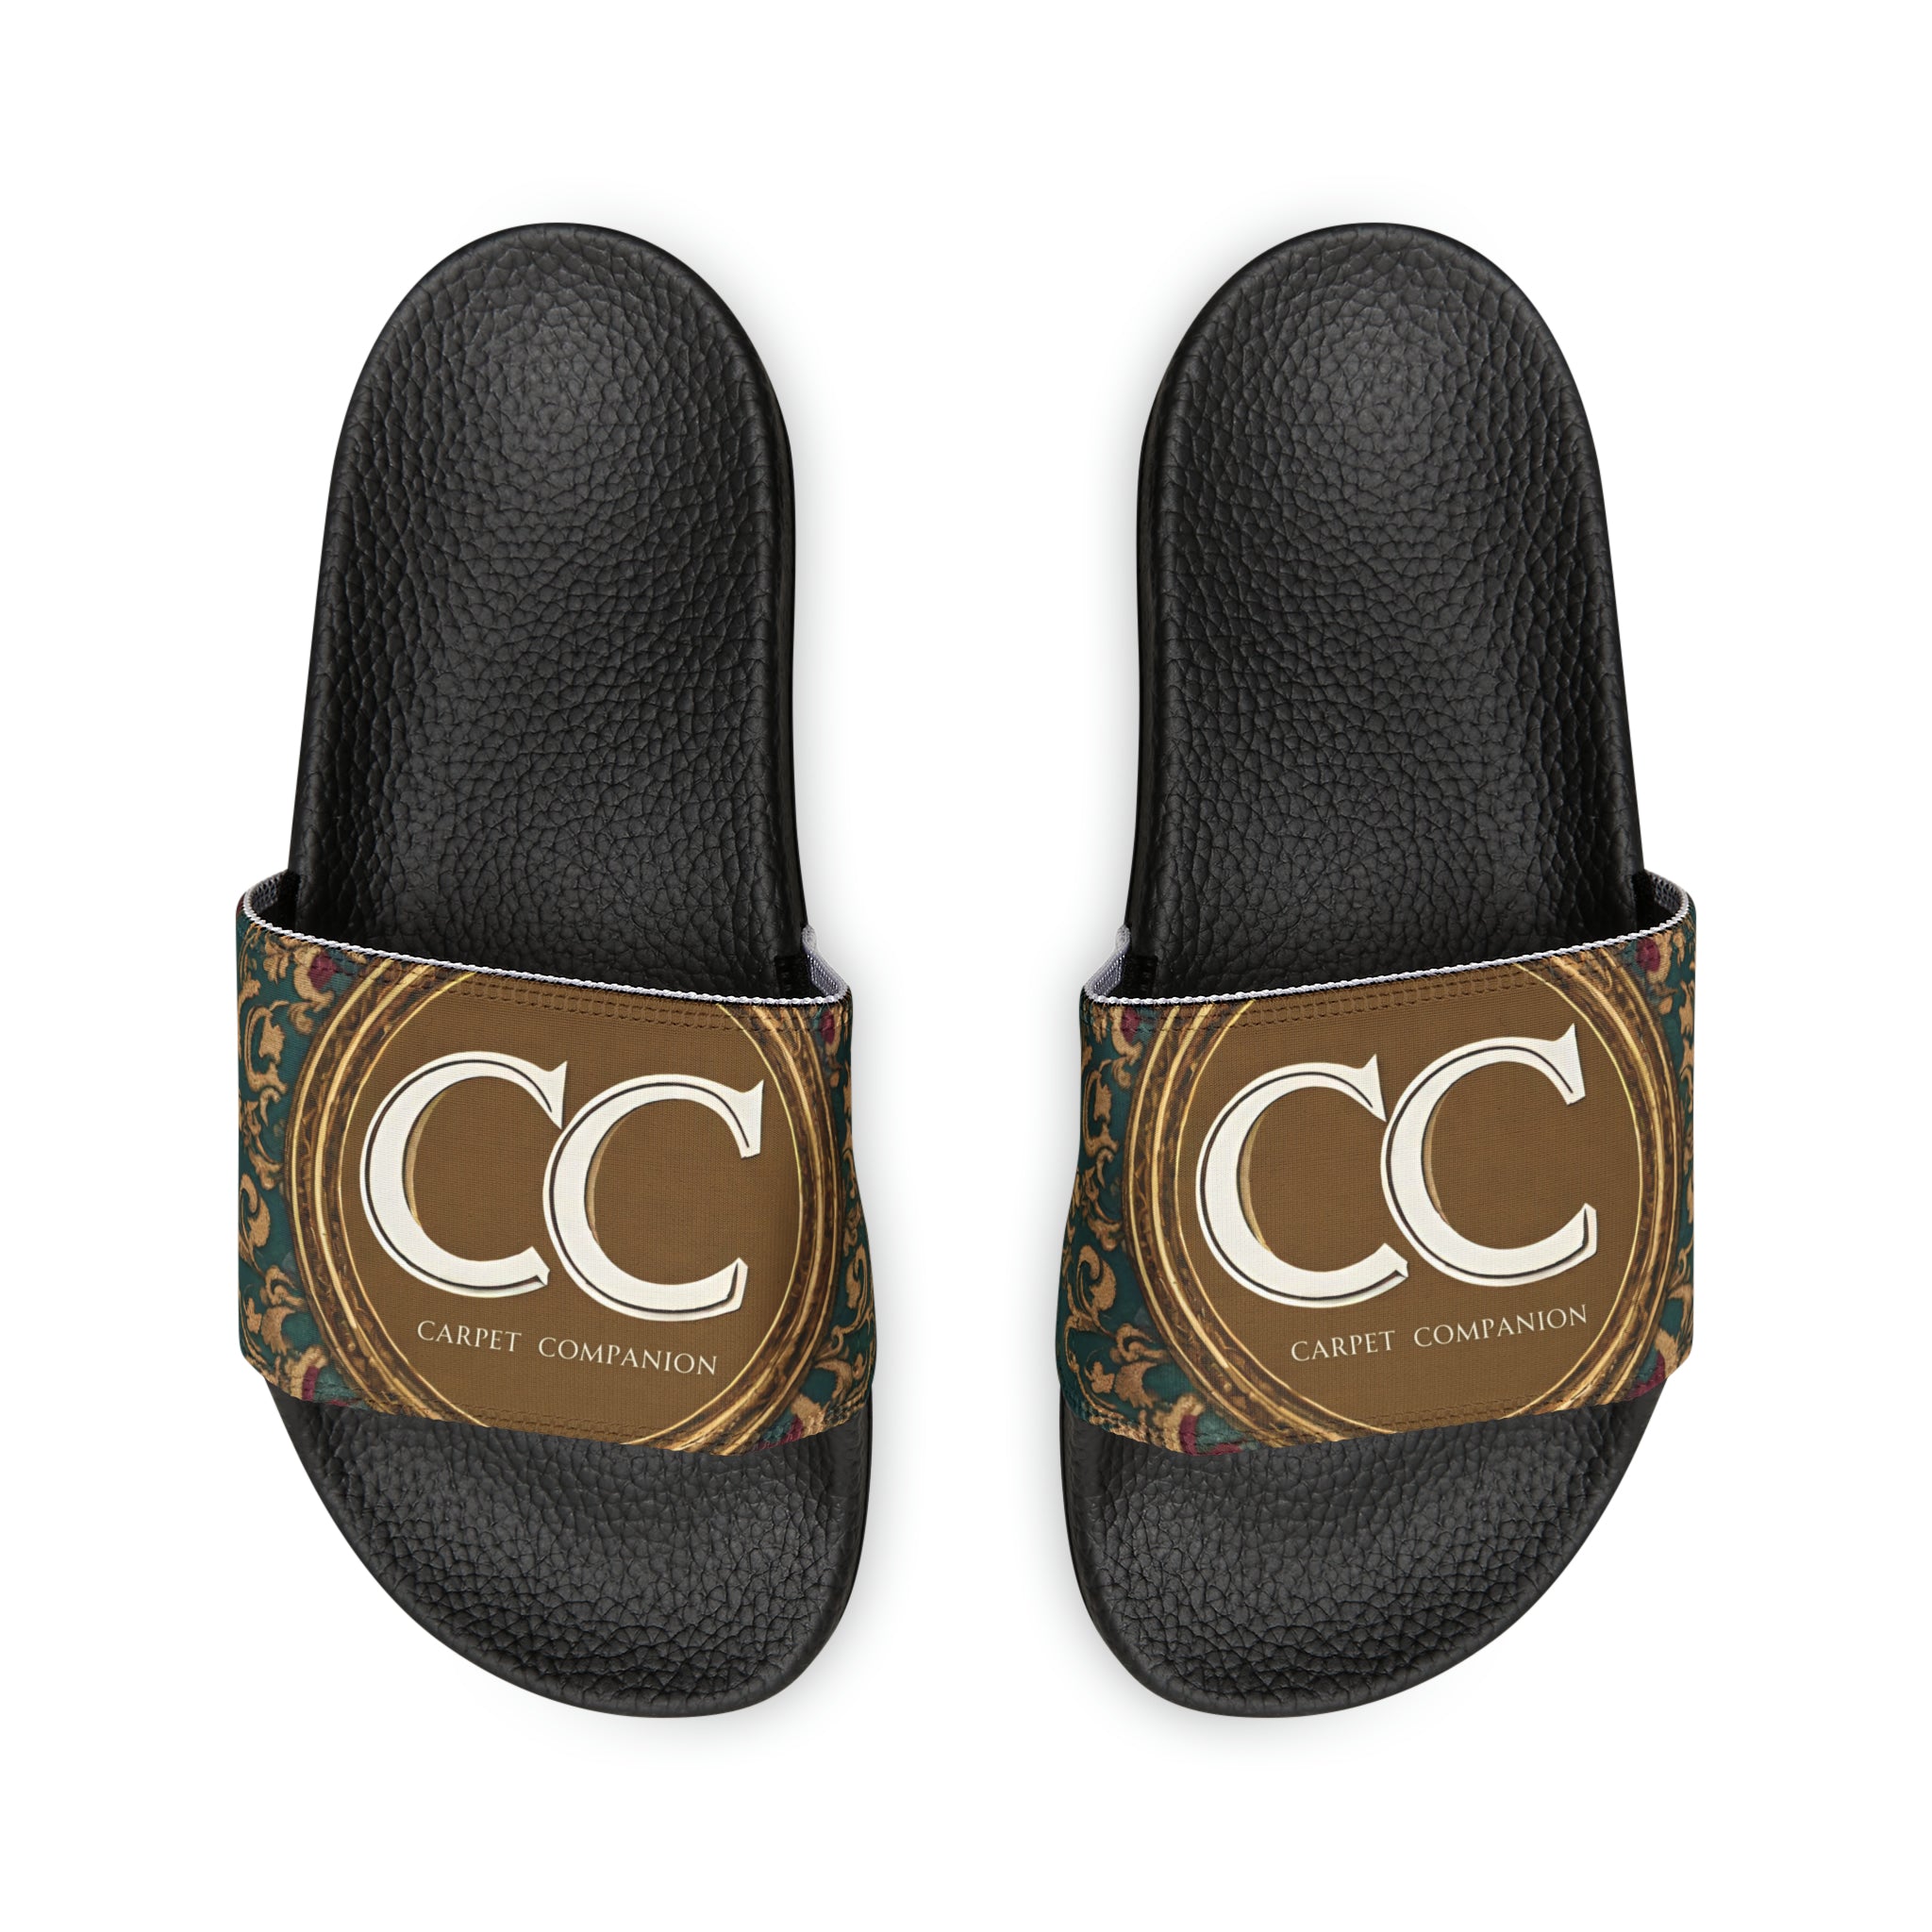 Carpet Companion CC Slide Sandals